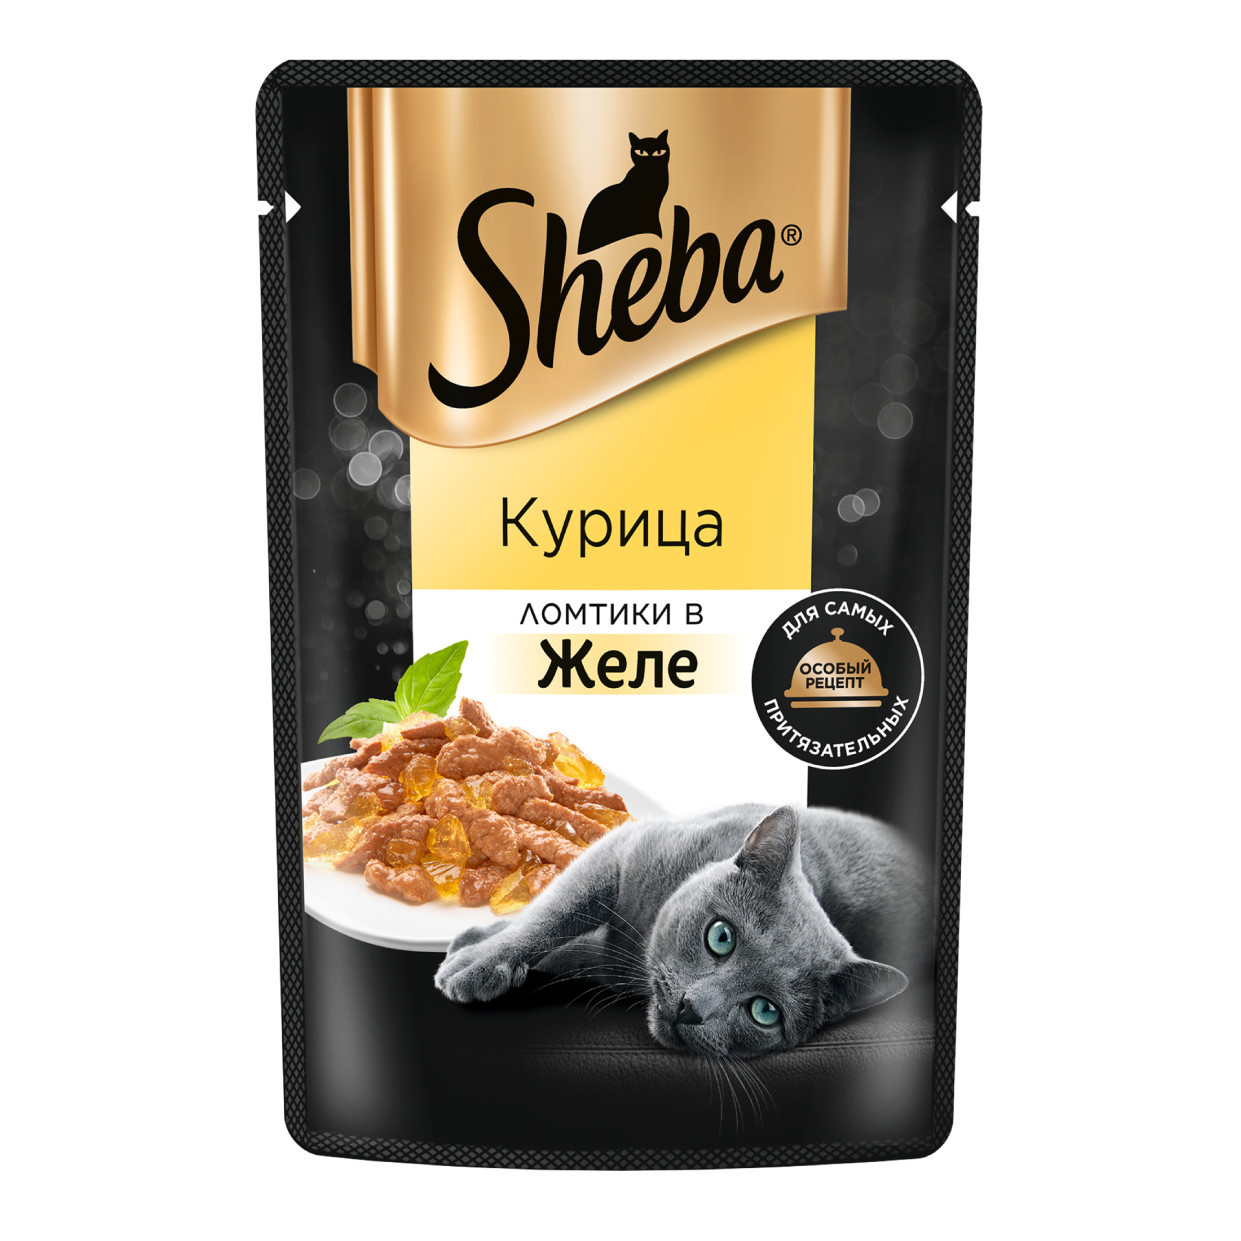 Sheba Sheba влажный корм для кошек «Ломтики в желе с курицей» (75 г) sheba sheba влажный корм для кошек nature s collection с курицей и паприкой 75 г